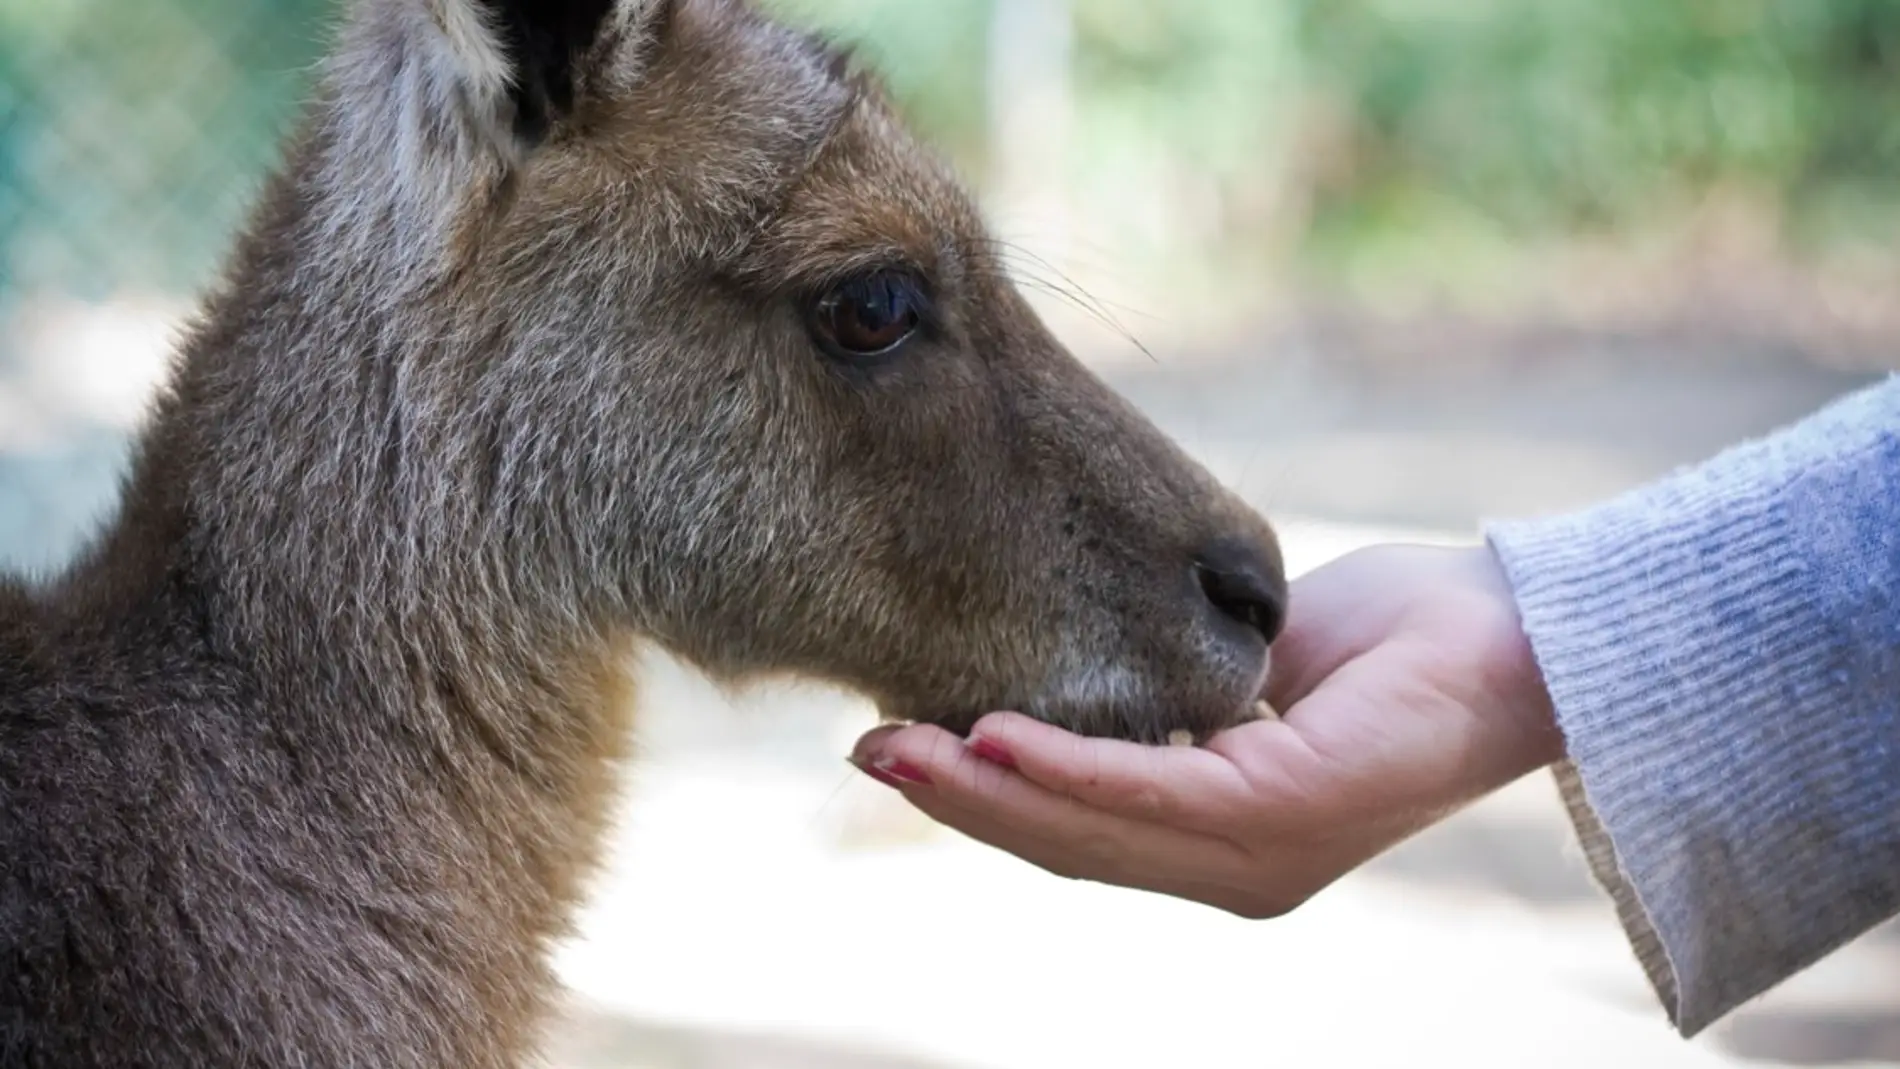 ¿Por qué algunos animales toleran más el contacto humano que otros?